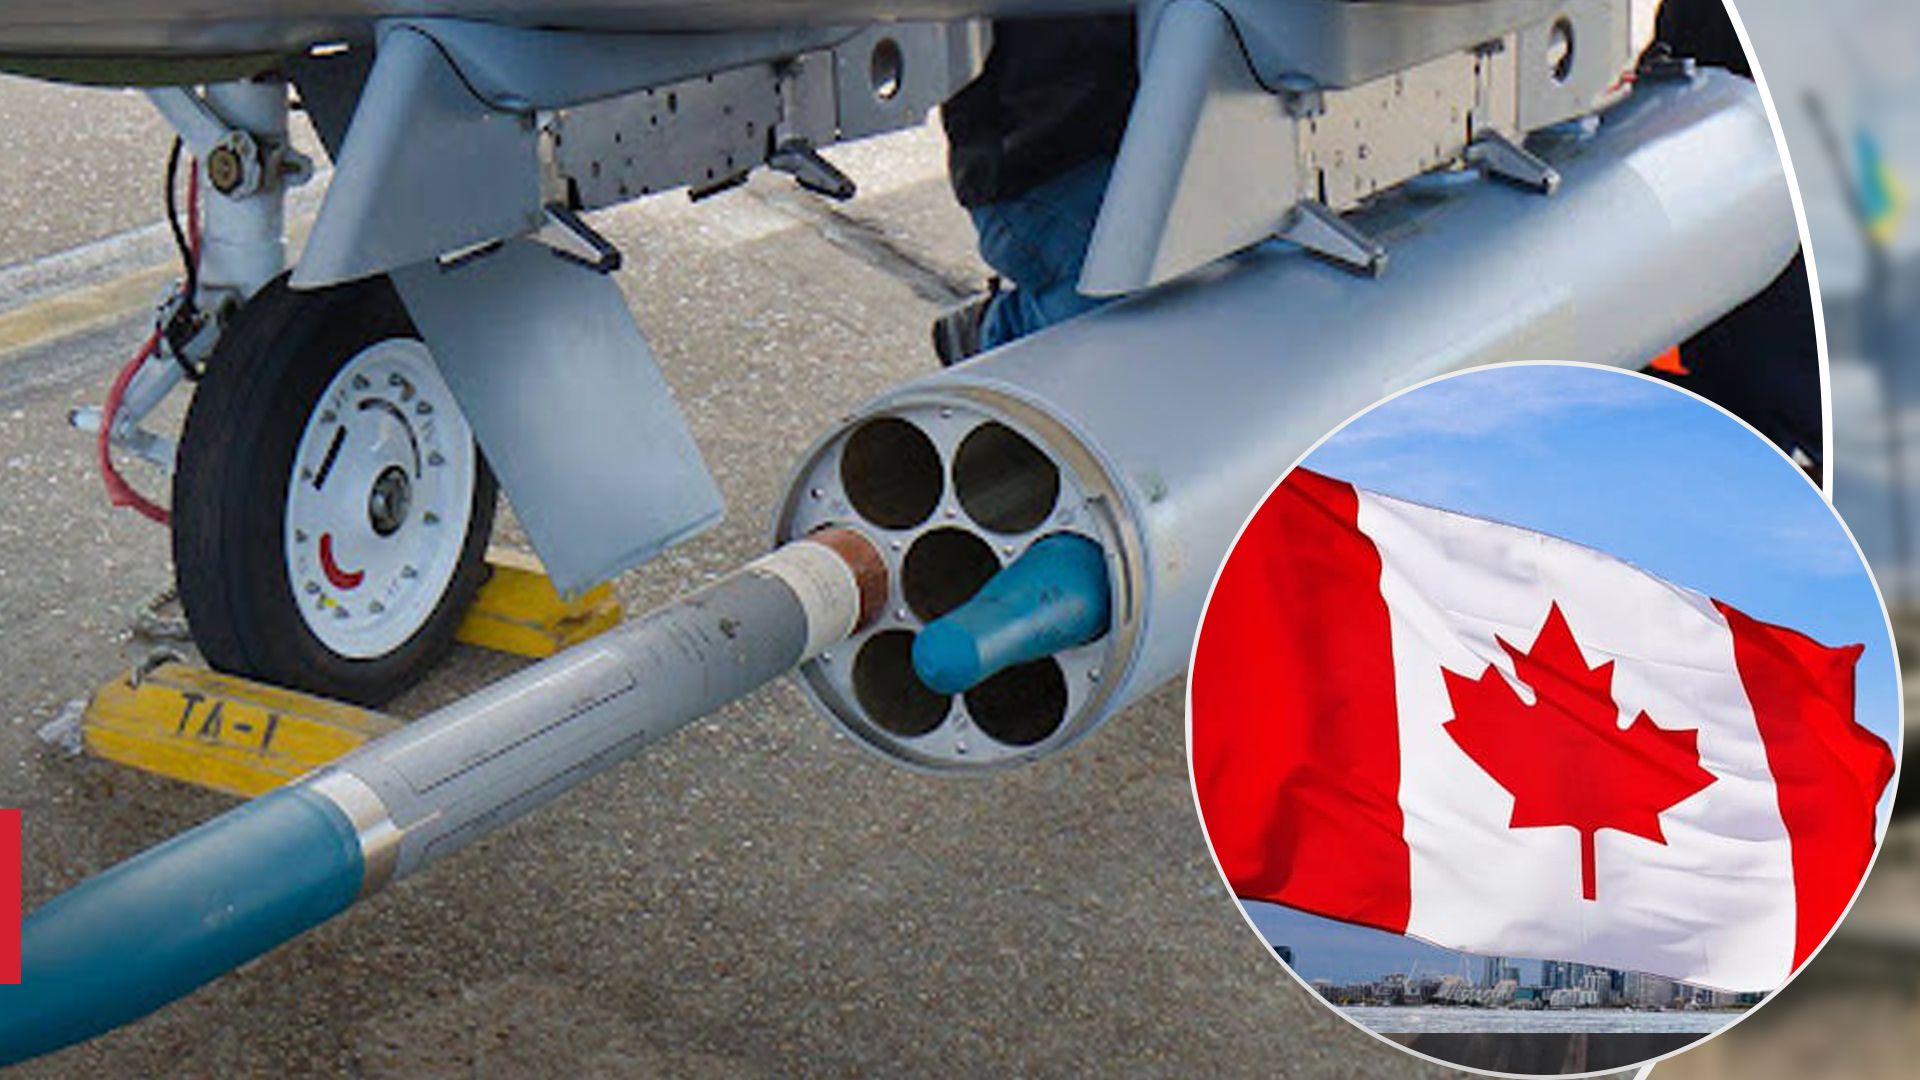 Канада может передать ВСУ ракеты CRV7 разработки 70-х вместо утилизации, - CBC - 24 Канал